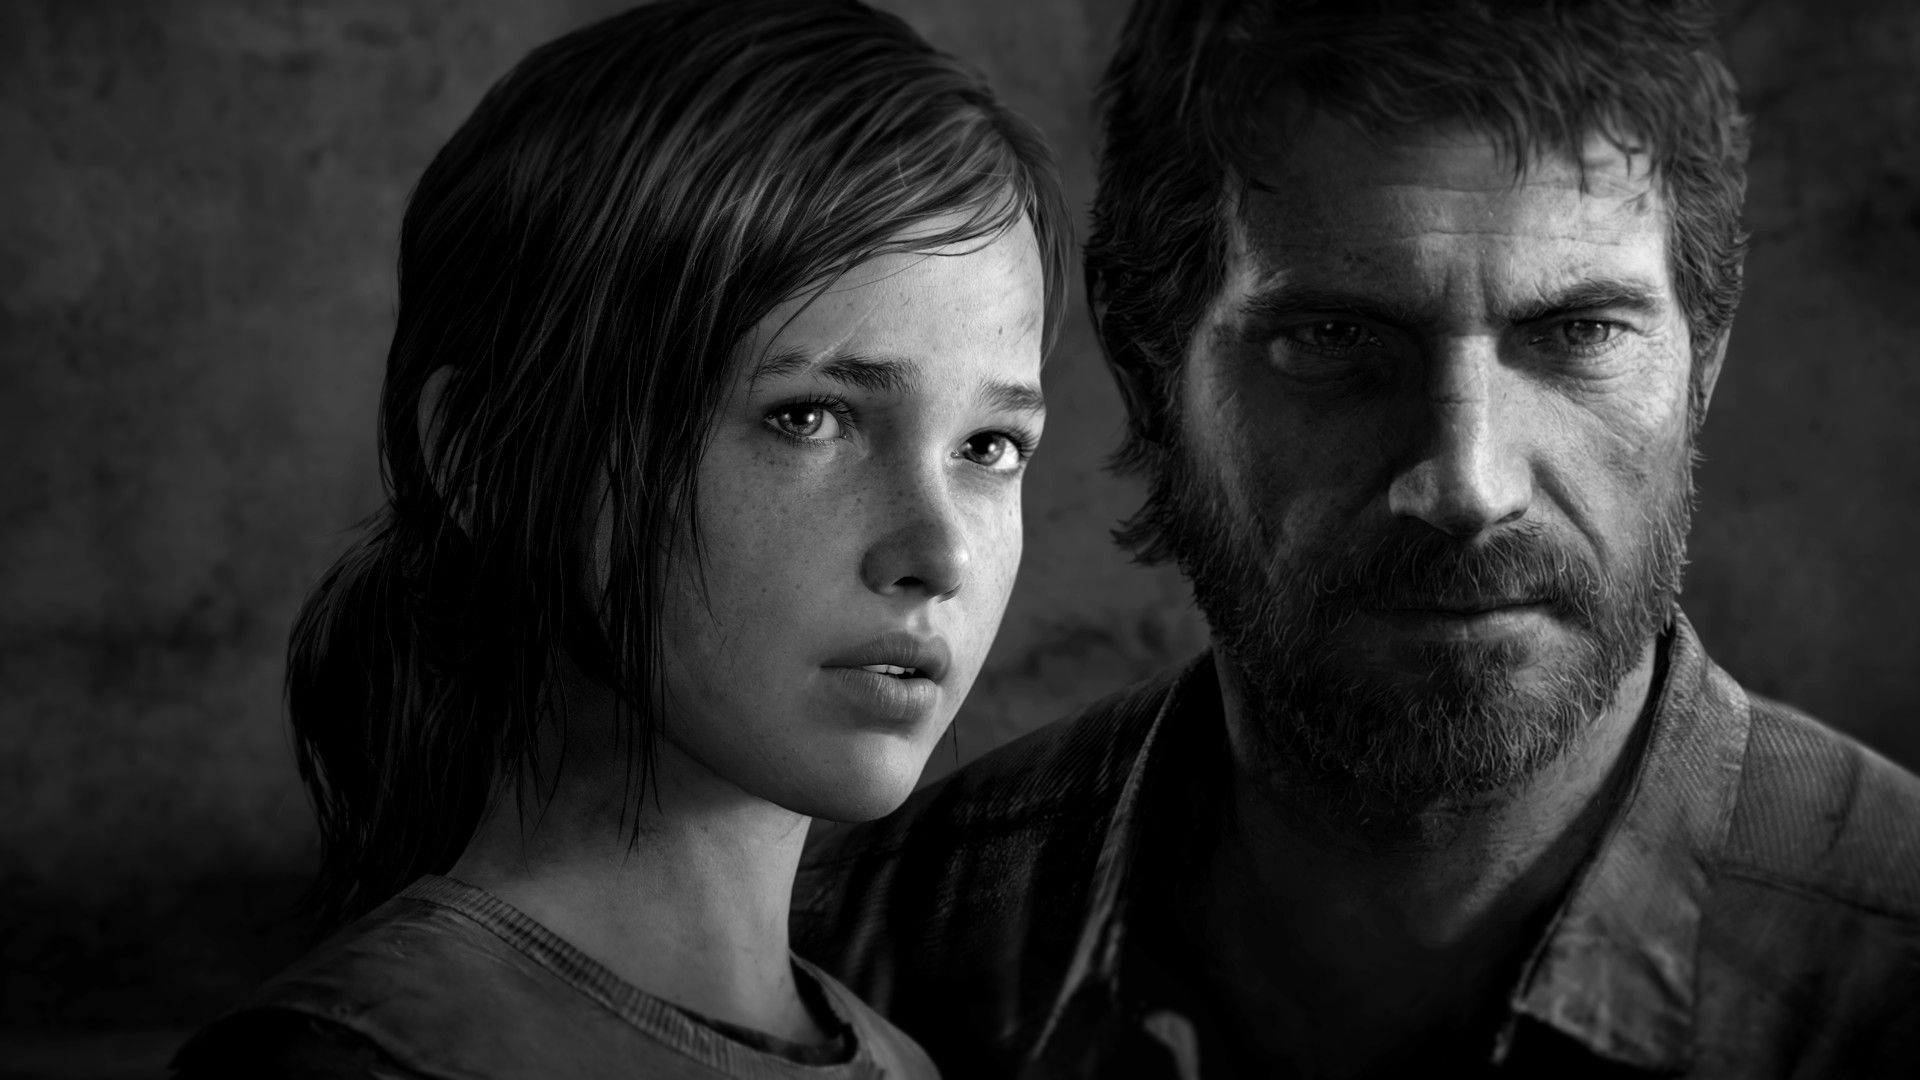 Pedro Pascal et Bella Ramsey (Game of Thrones) pour incarner Joel et Ellie dans la série The Last of Us